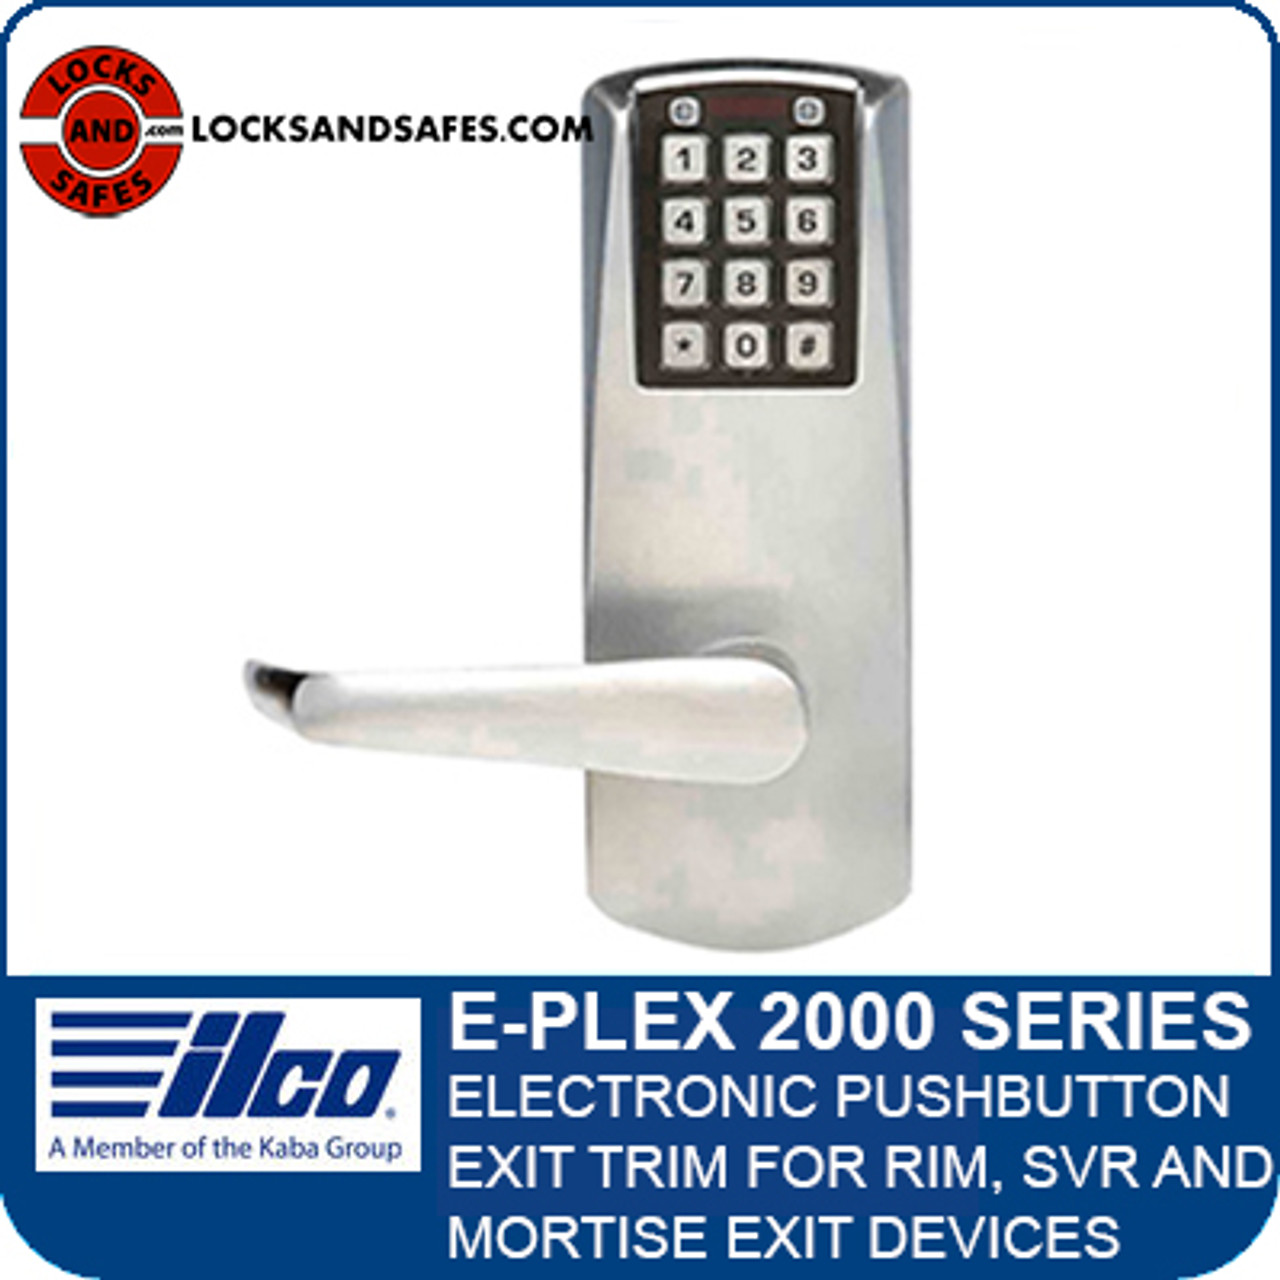 Simplex E Plex 2000 Pin Code Exit Lock For Rim Devices